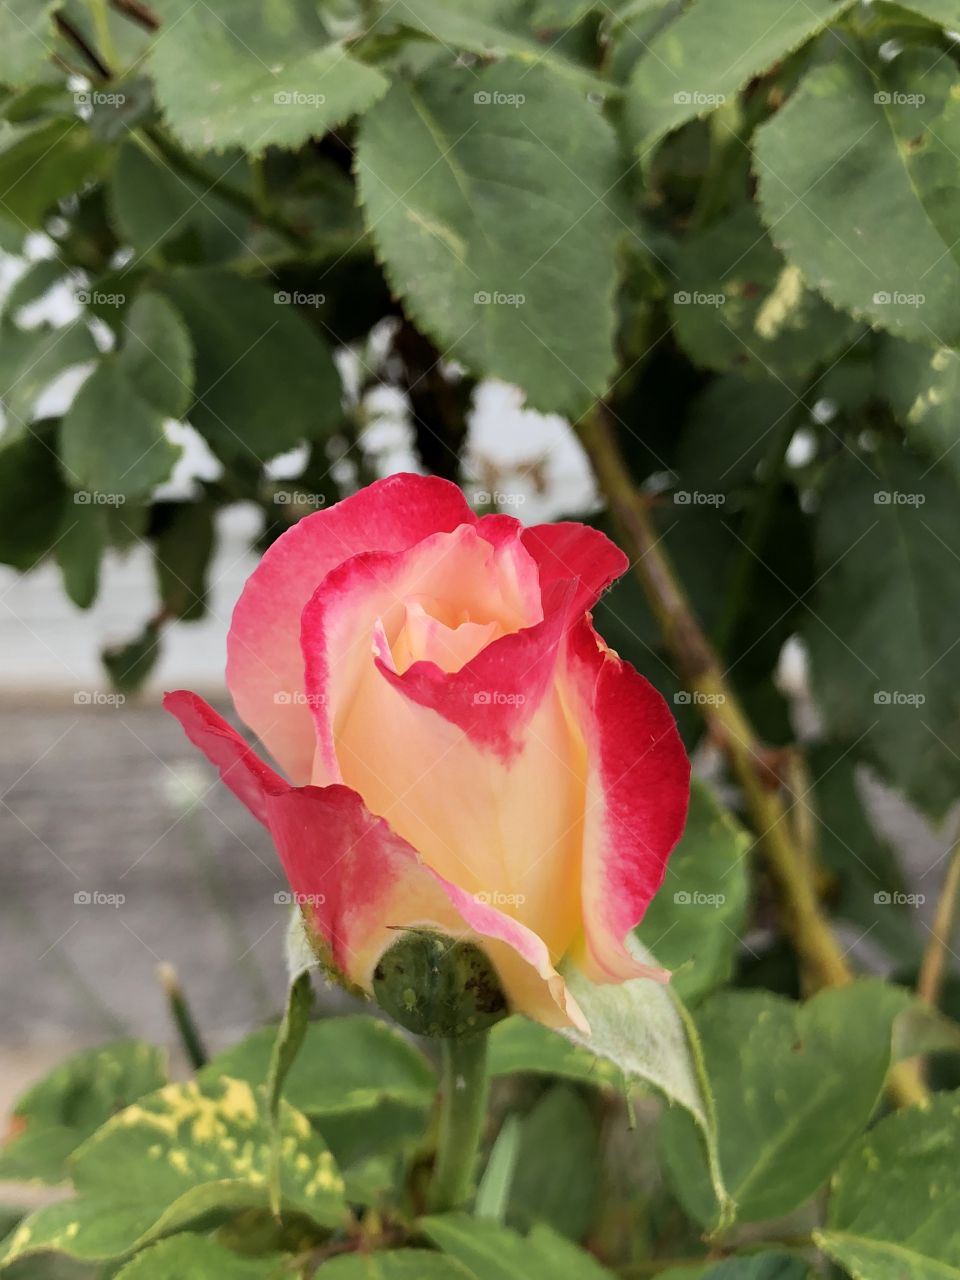 Budding rose